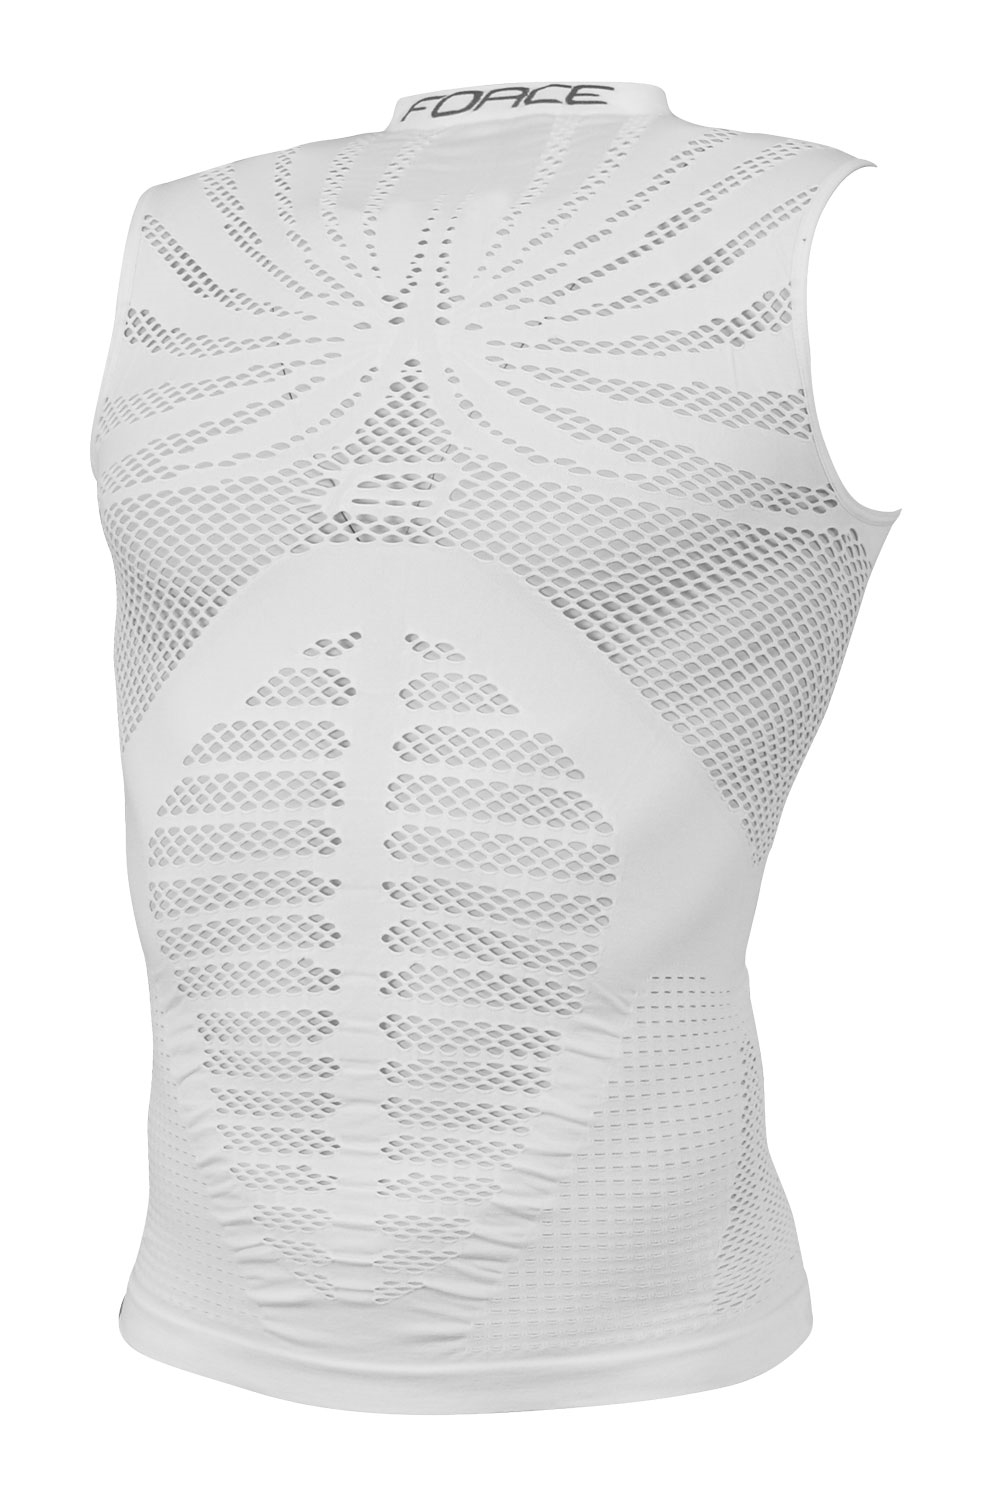 triko/funkční prádlo FORCE HOT bez rukávů,bíléL-XL